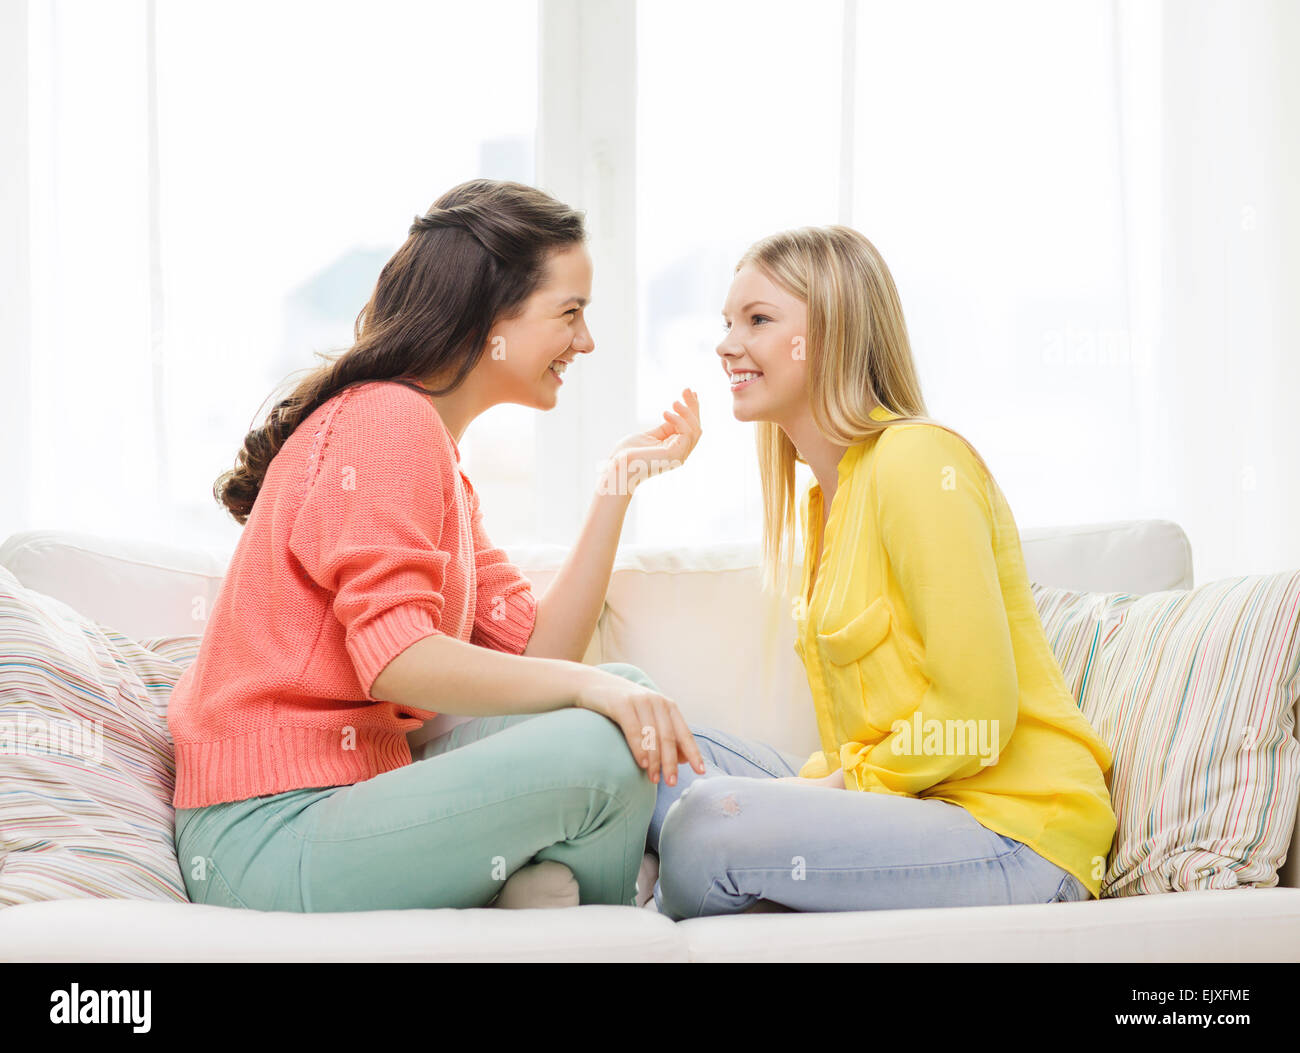 Привела подругу с разговорами. Две девушки беседуют. Разговор двух подруг на диване. Подруги болтают на диване. Подруги общаются.